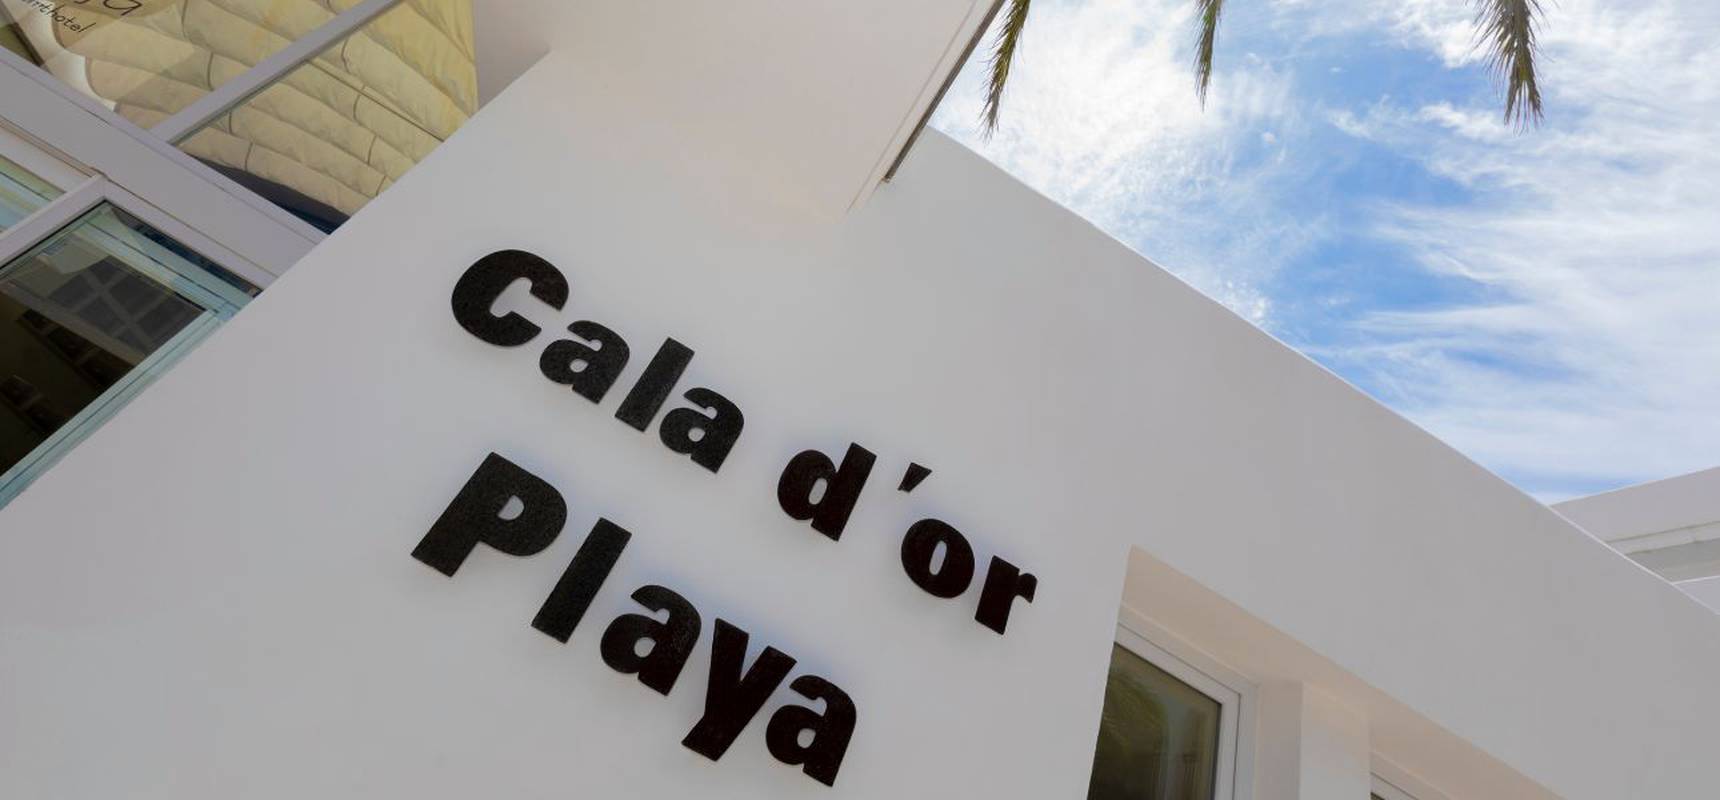  Hôtel Cala d’Or Playa Mallorca